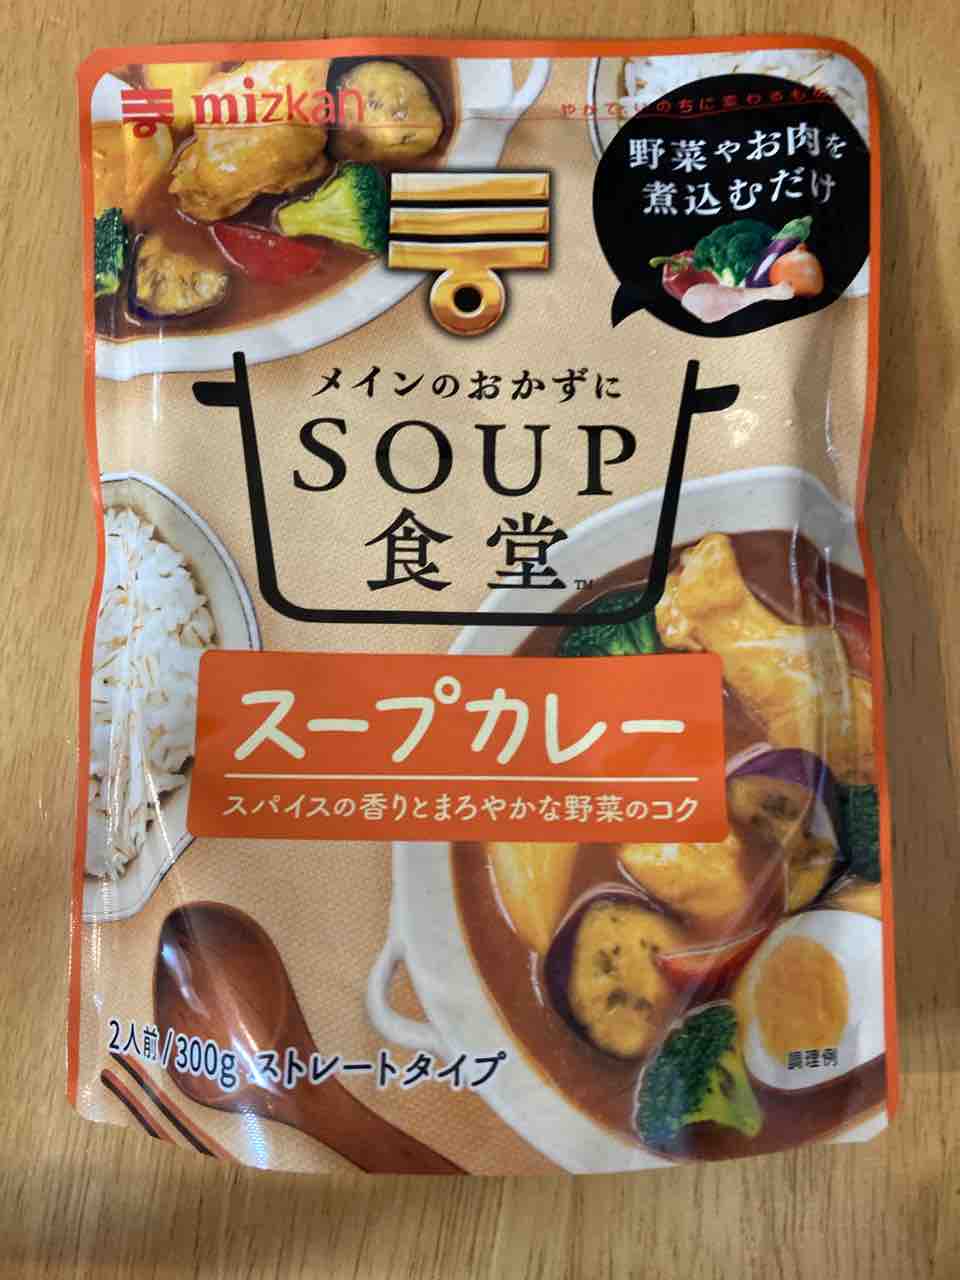 調理 21 078 ミツカン Soup食堂 スープカレーはスープだけのレトルトなので具材の追加 手抜きが自由自在 カレー探求 たまにai創薬